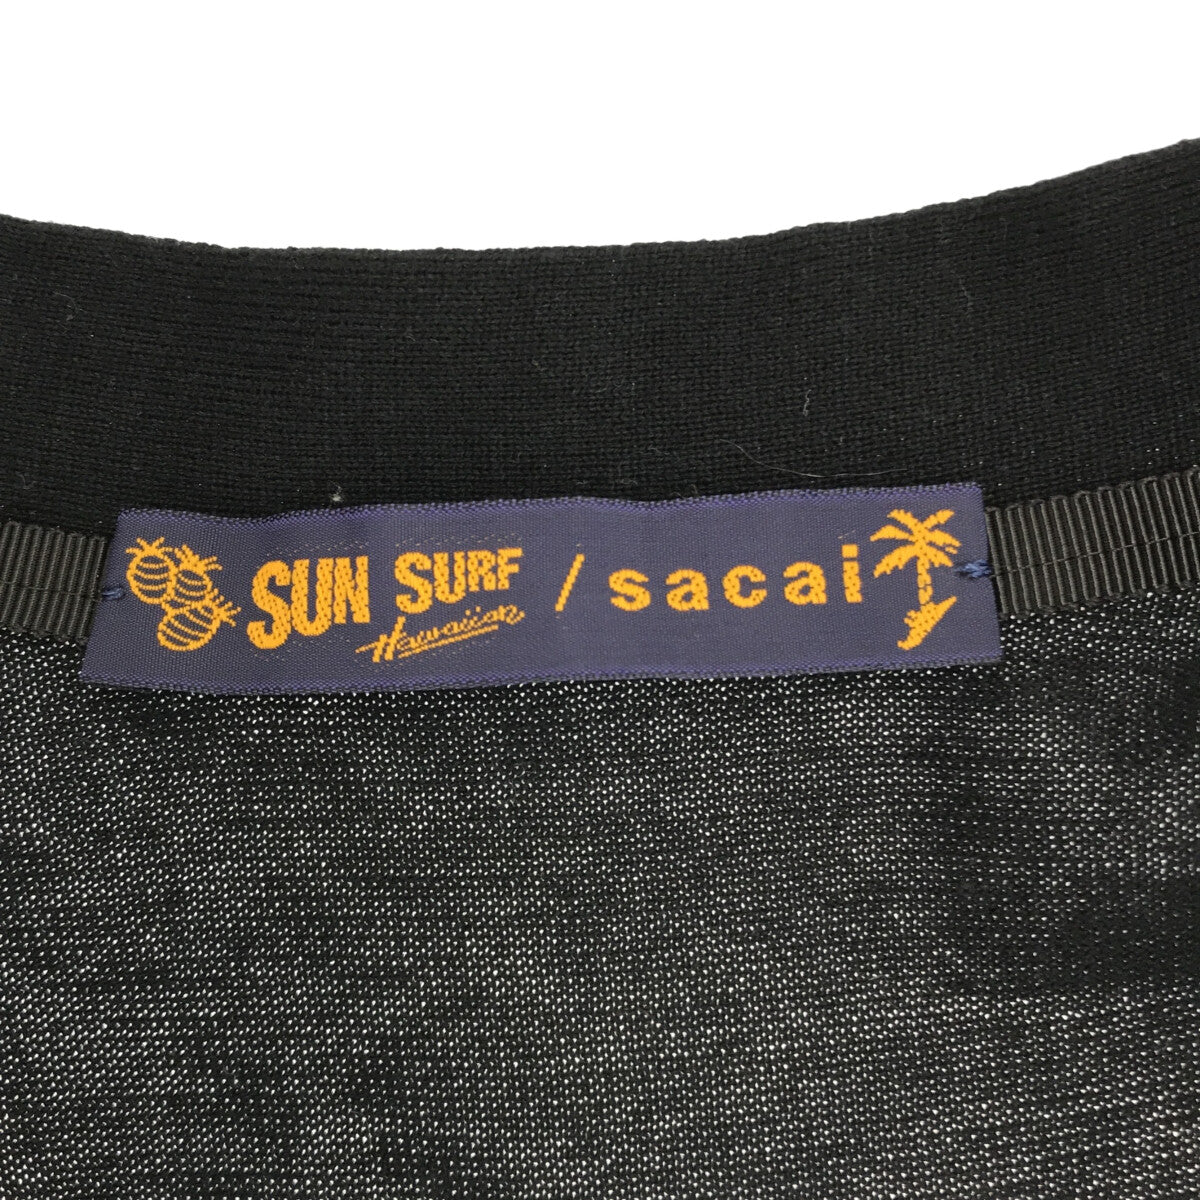 【美品】  sacai / サカイ | × SUN SURF / サンサーフ ドッキング ニットカーディガン | 1 | ブラック/ブルー | レディース